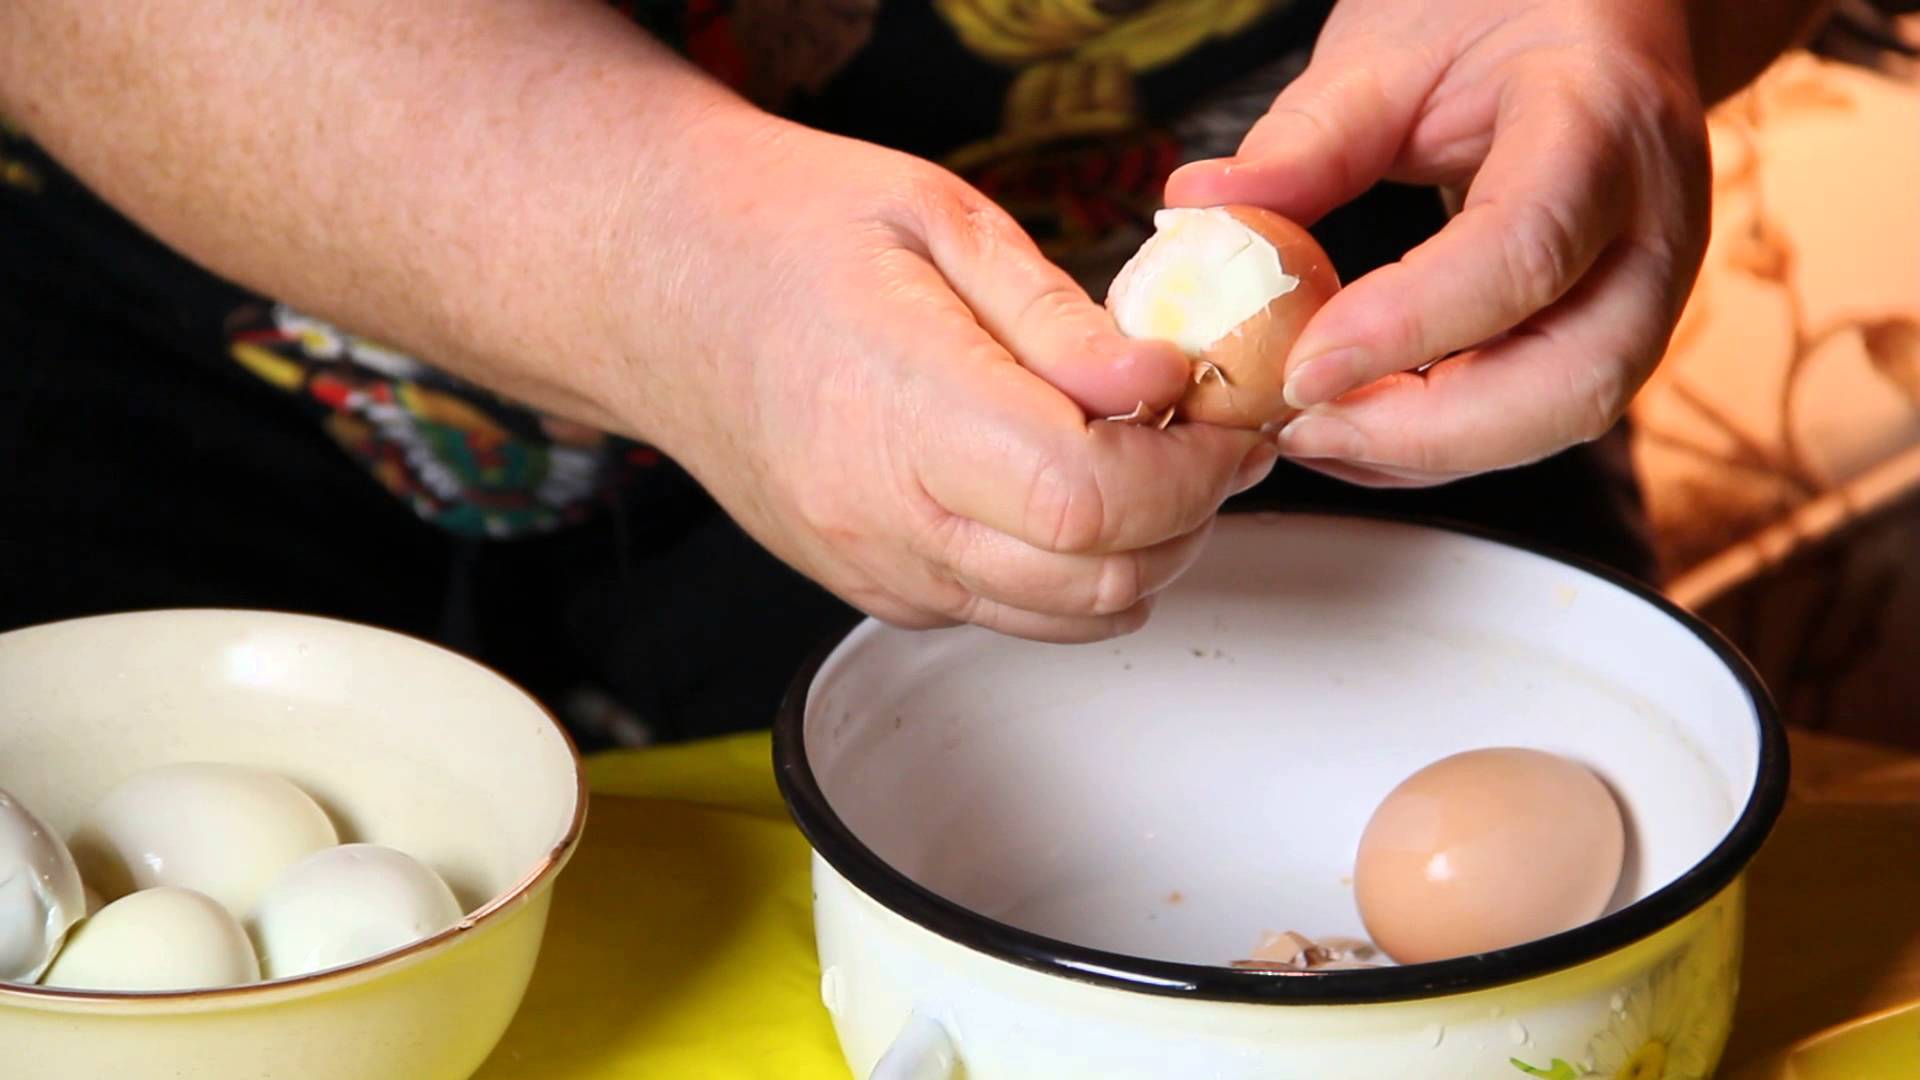 Сколько варить яйца куриные или перепелиные после закипания воды вкрутую, в мешочек и всмятку